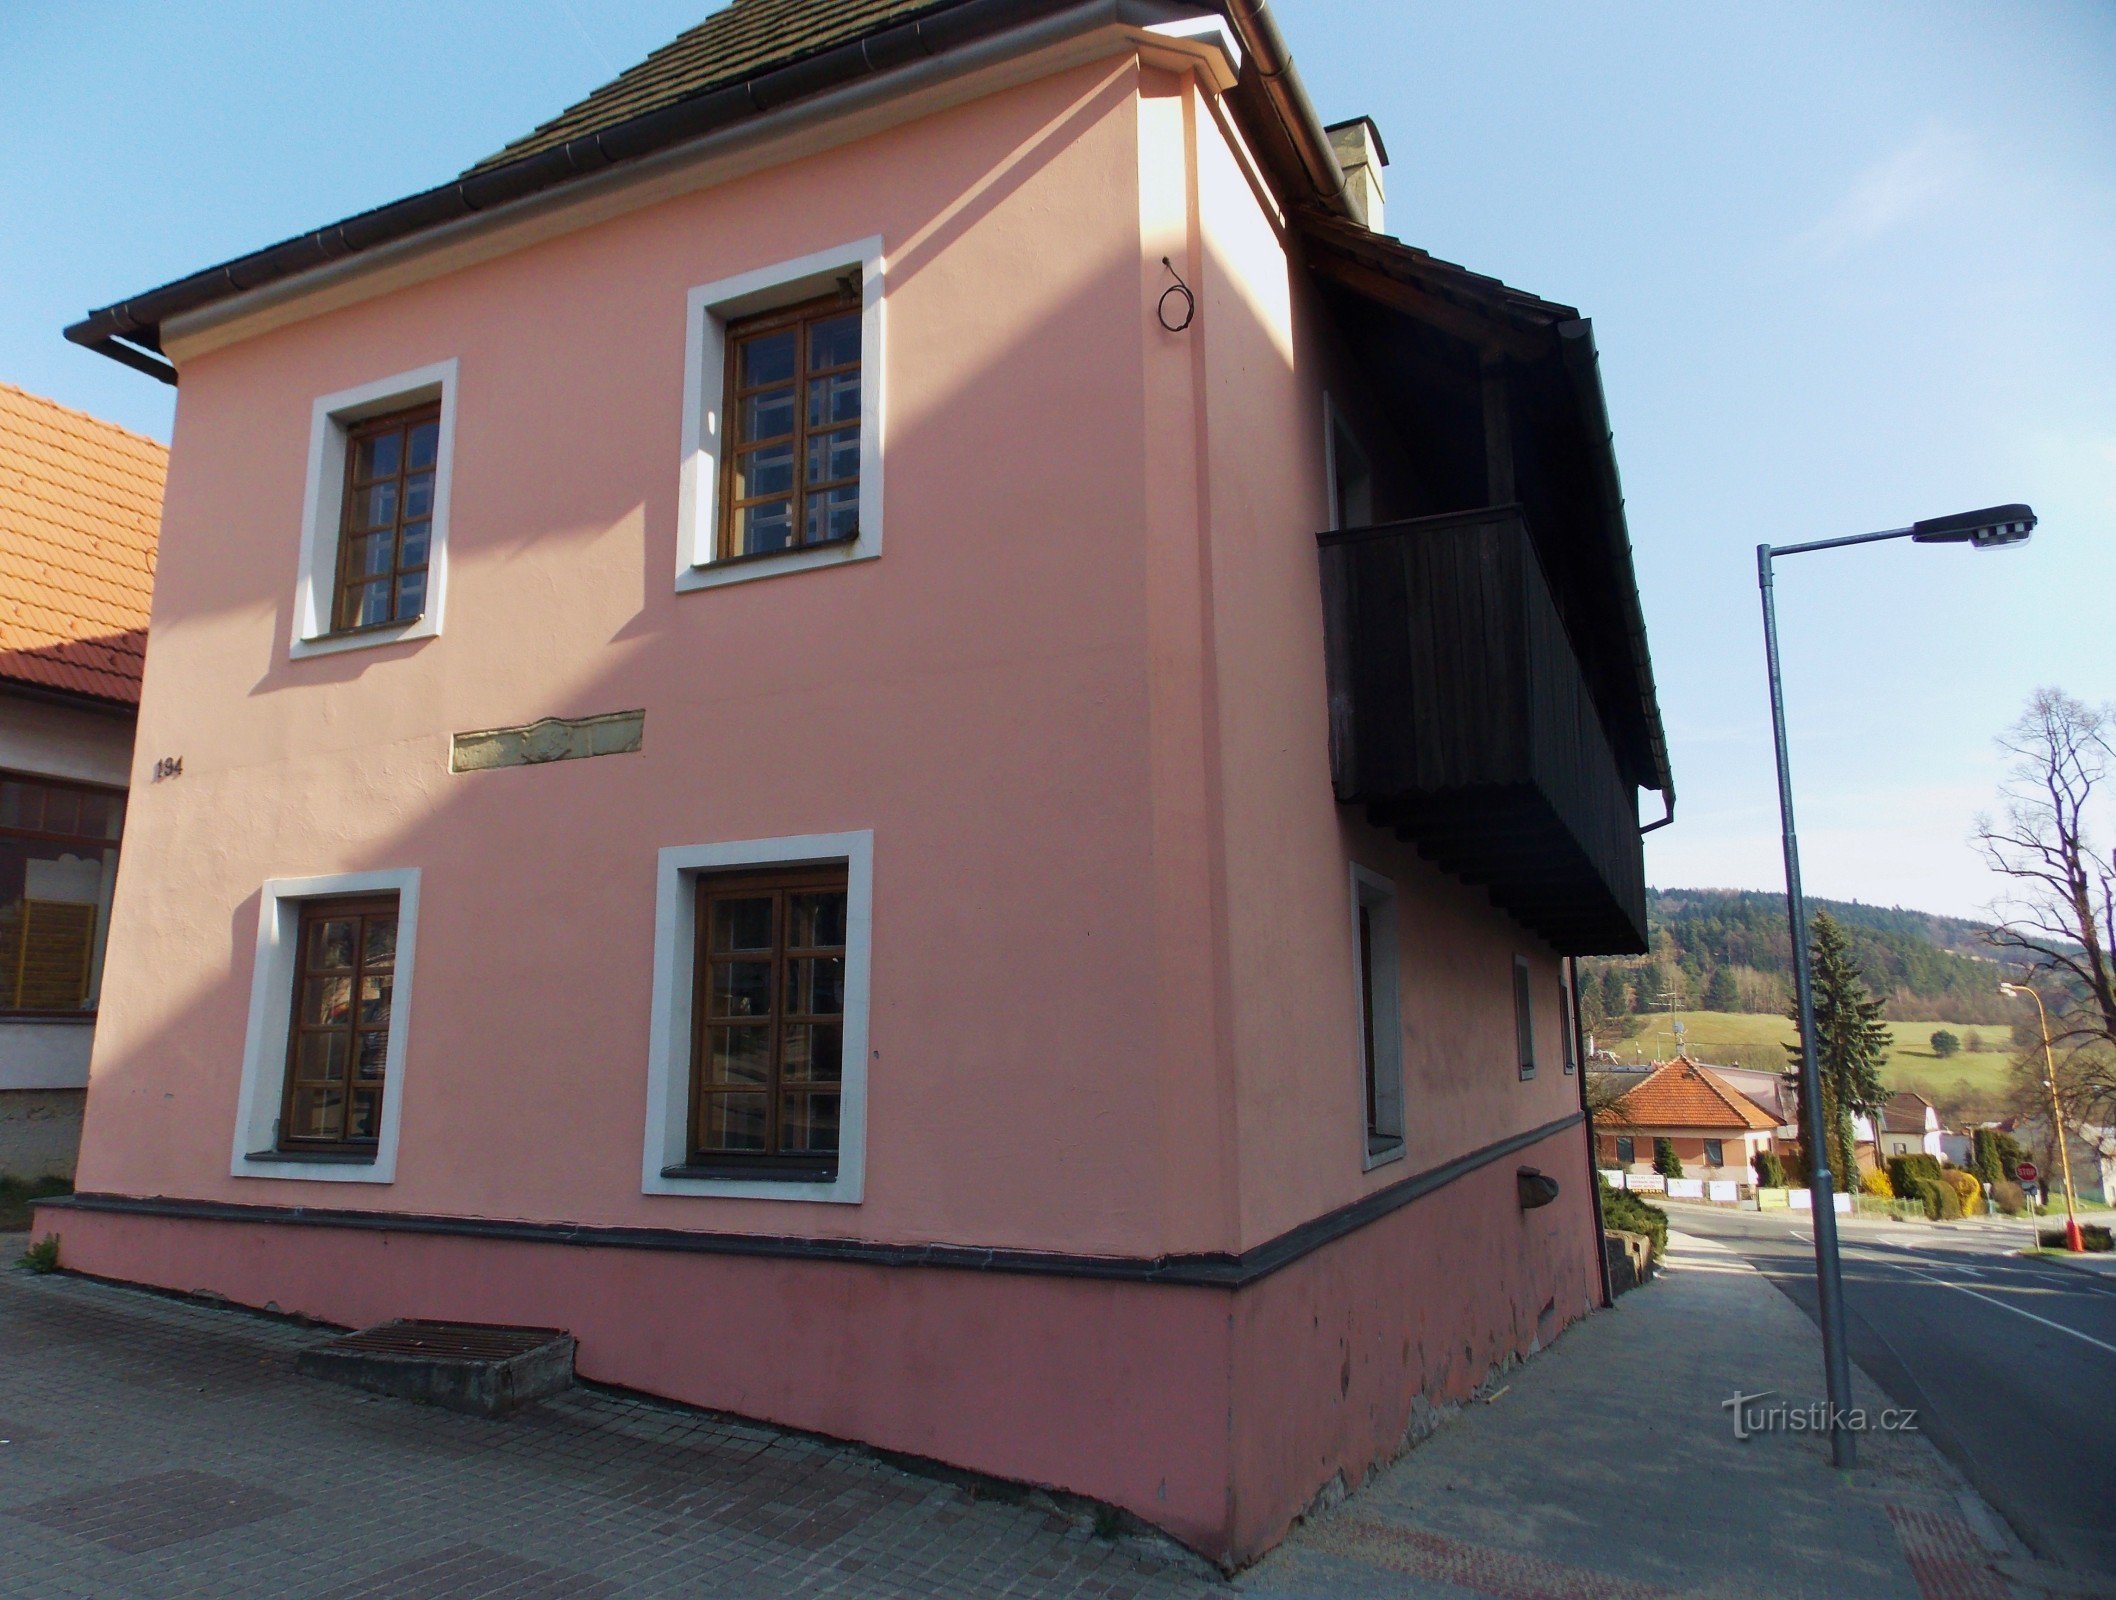 Crvena kuća, drugi objekt muzeja u Valašské Klobouky